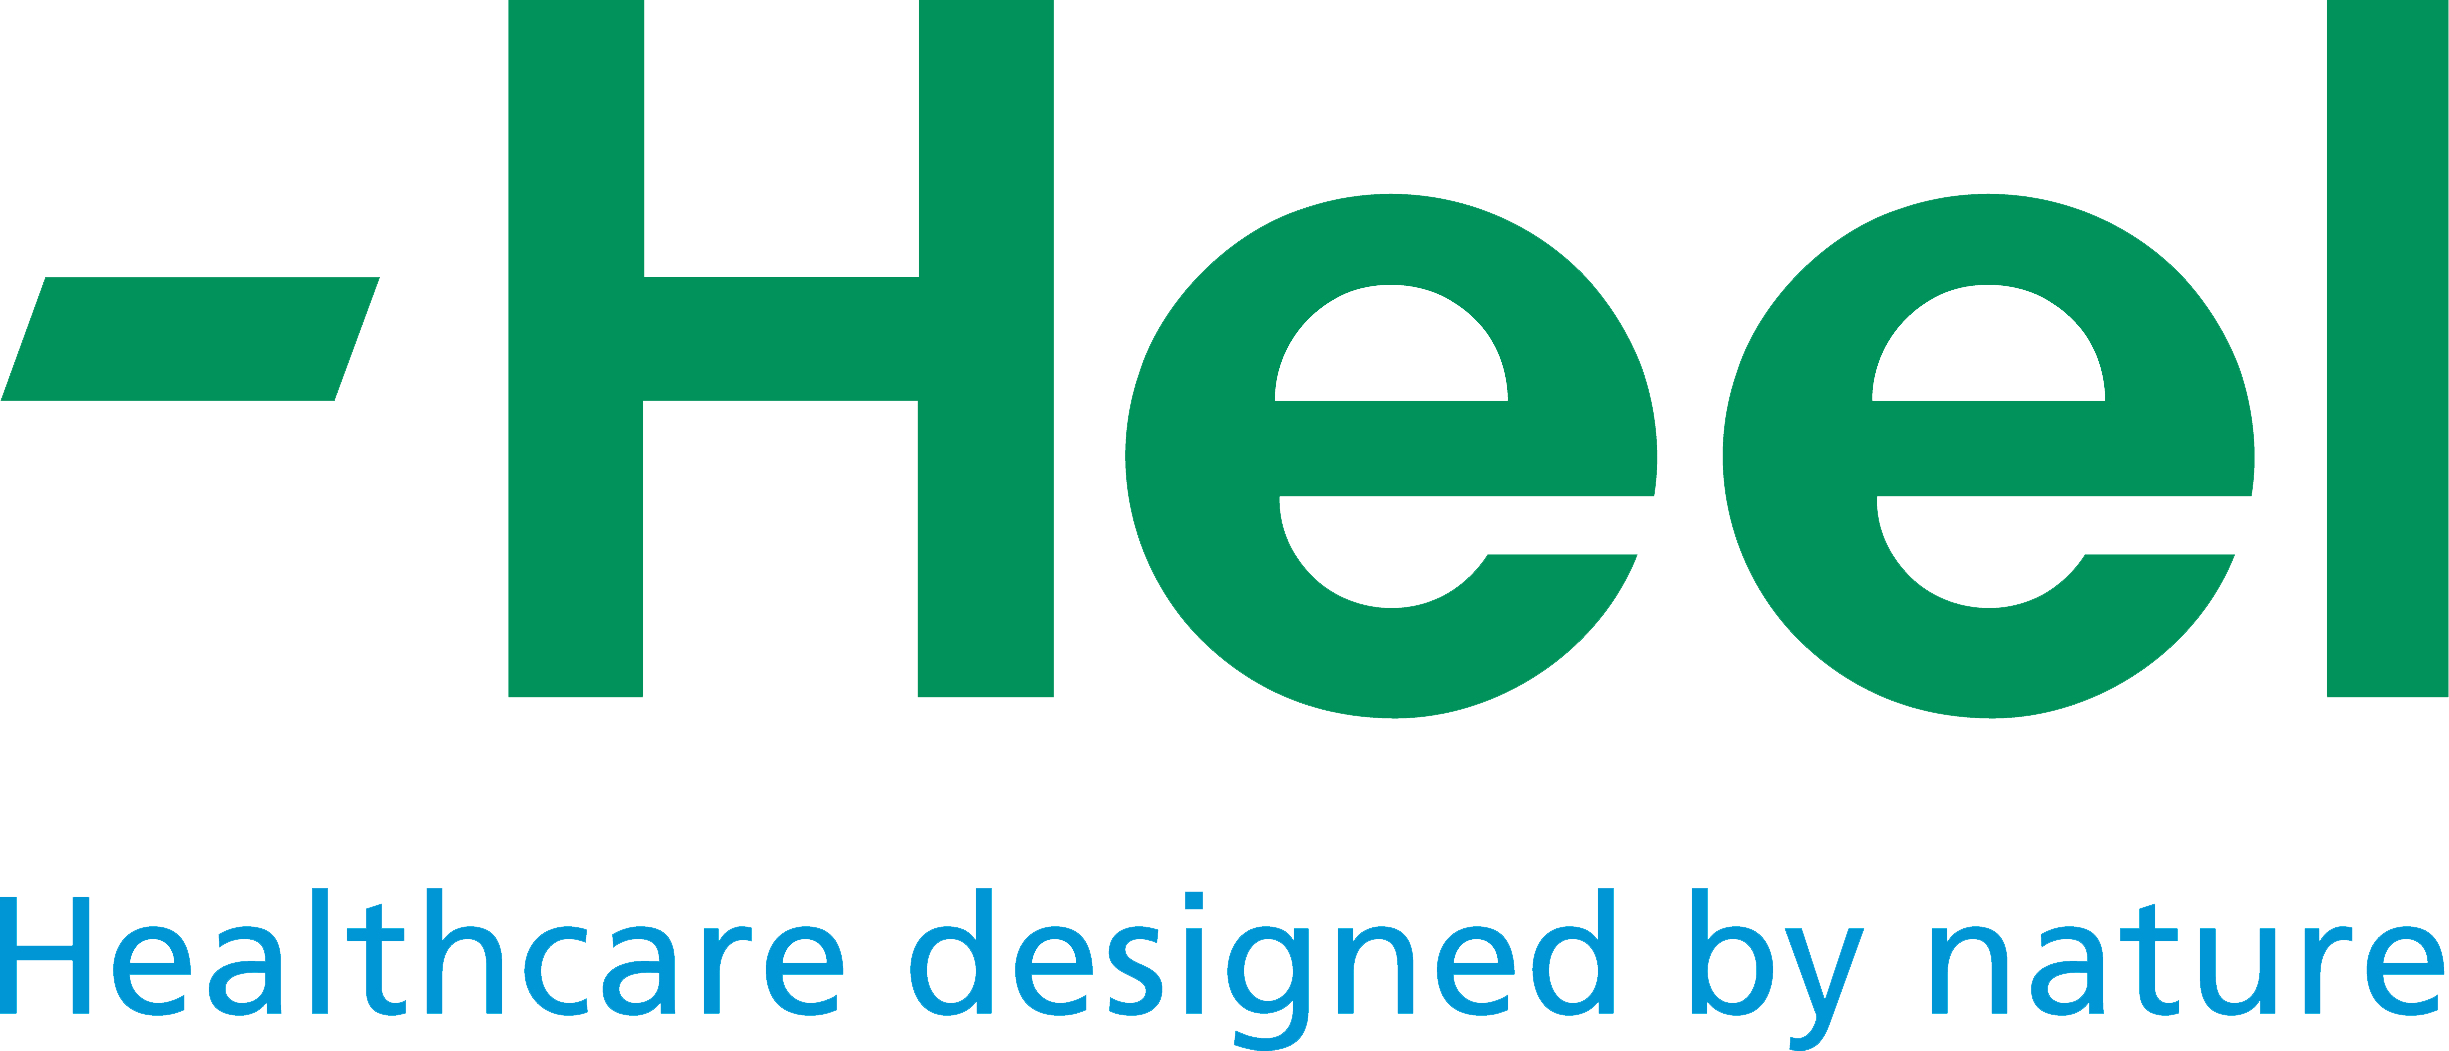 Logo Heel Claim rgb freigestellt